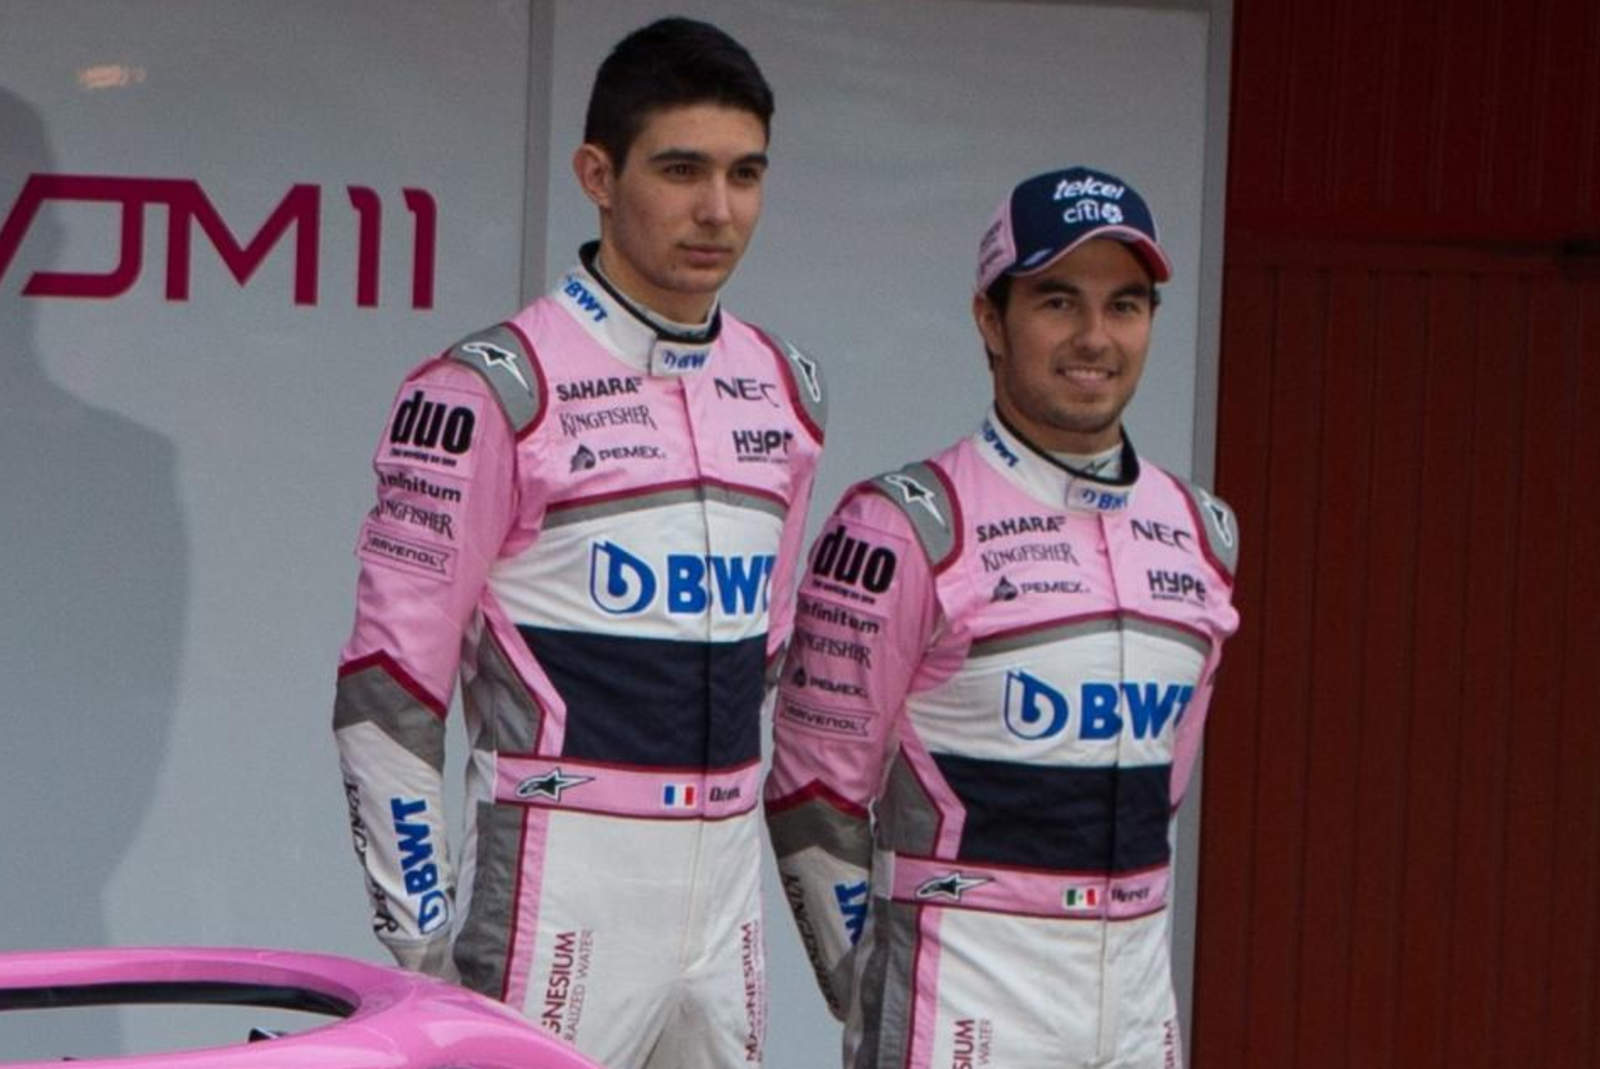 El piloto mexicano nunca mantuvo una buena relación con su coequipero, el francés Esteban Ocon.